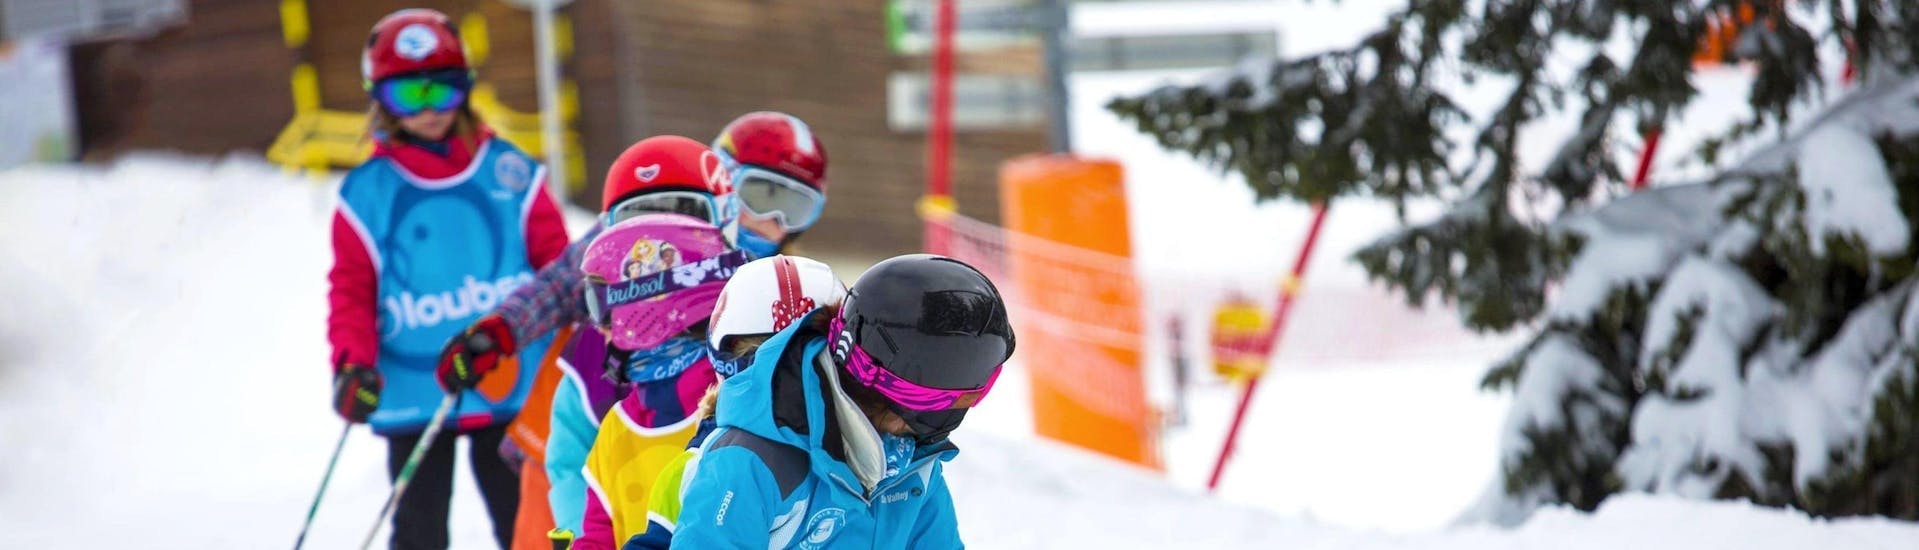 Premier Cours de ski Enfants (7-13 ans).